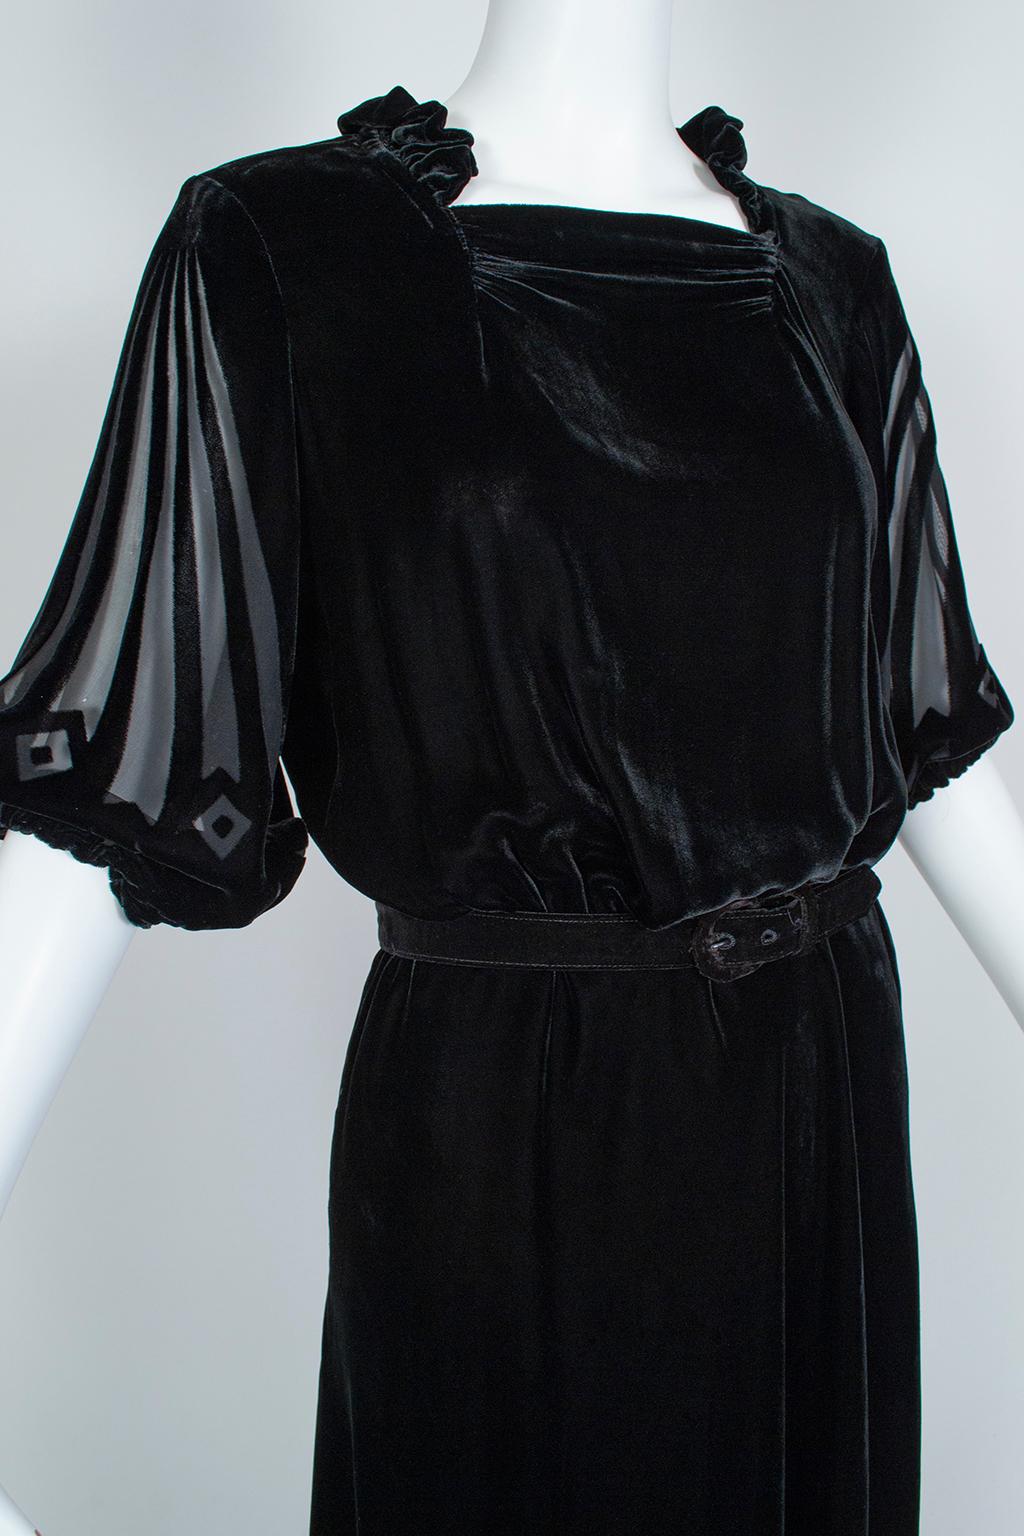 Black Art Deco Starburst Burnout Velvet Cocktail Dress - Medium, 1930s 1